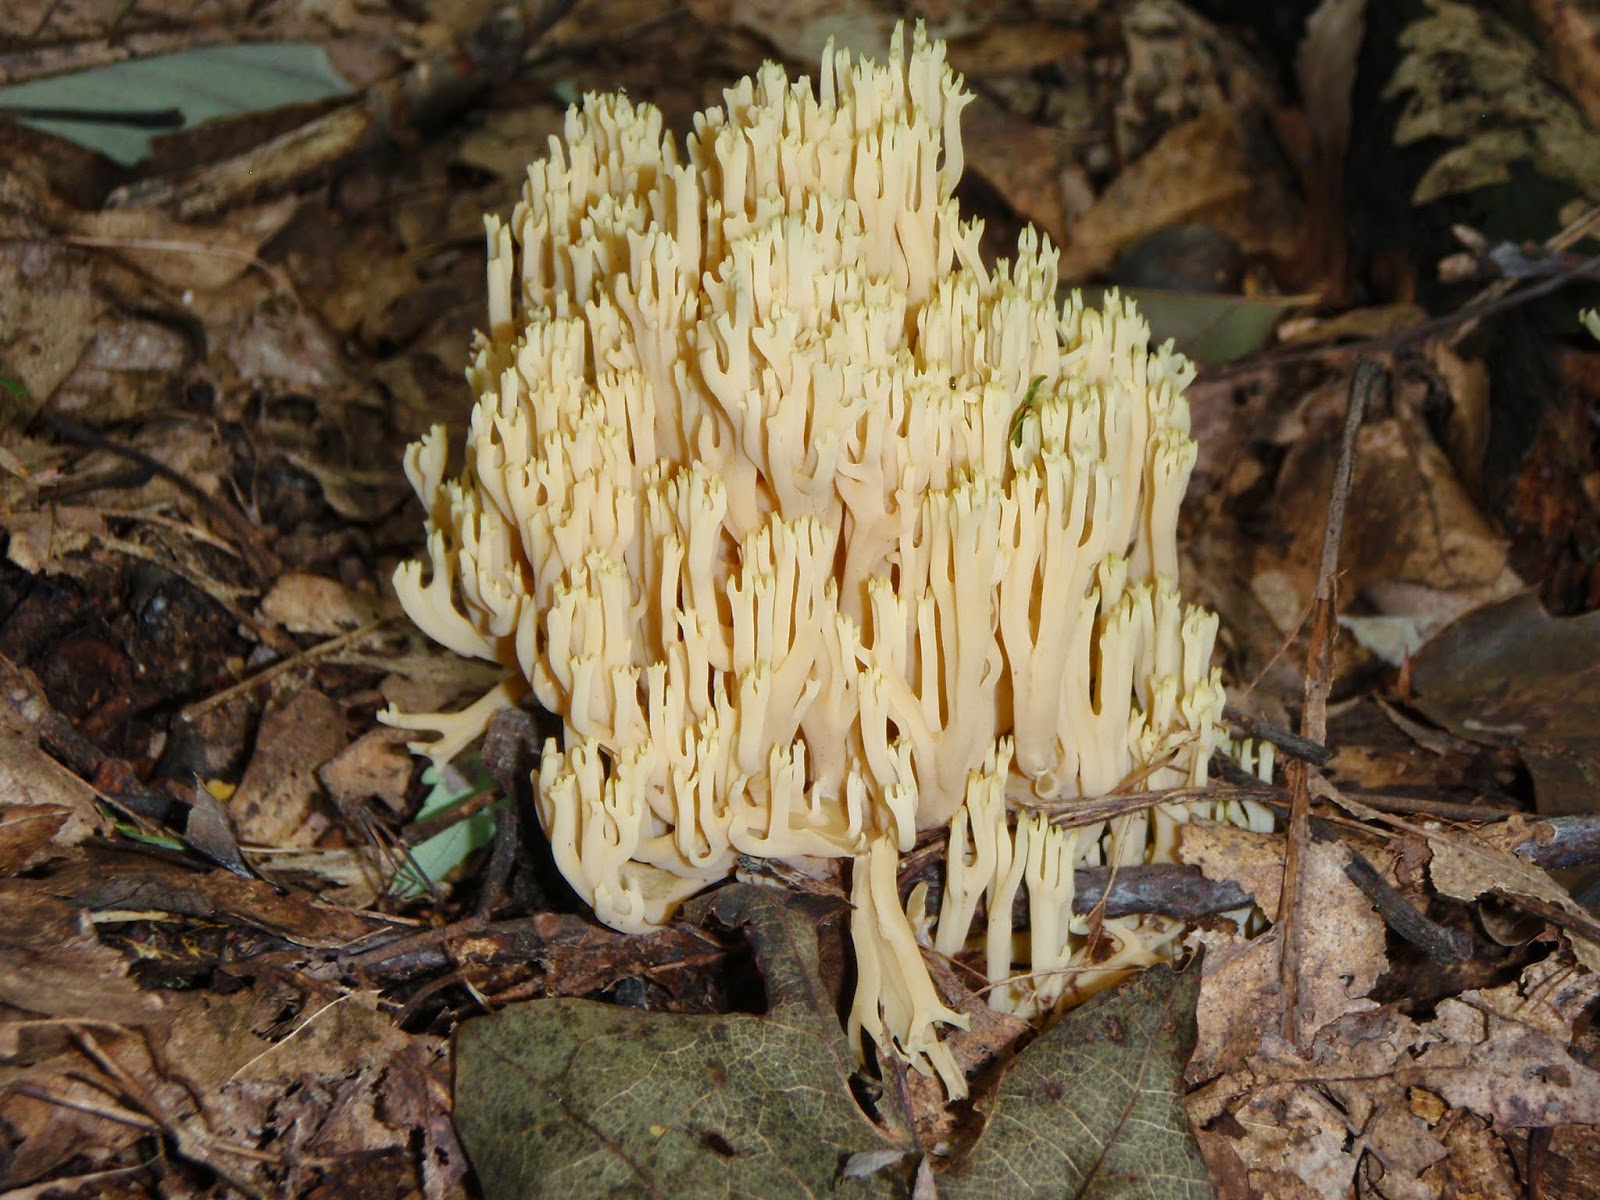 Beautiful fungus